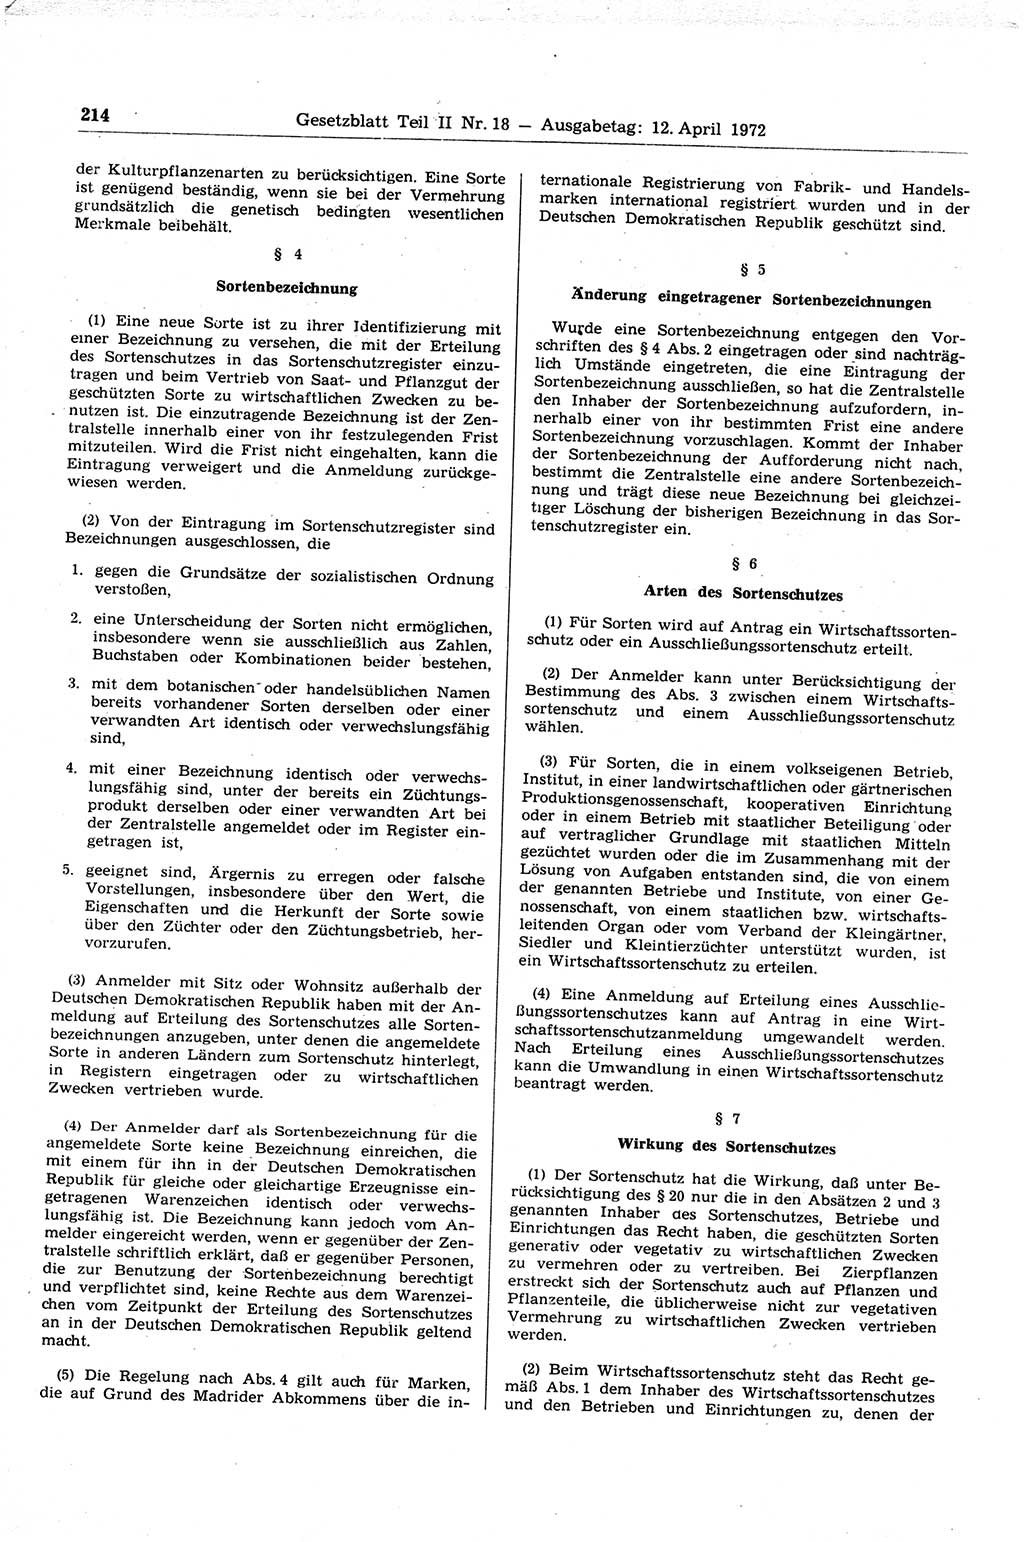 Gesetzblatt (GBl.) der Deutschen Demokratischen Republik (DDR) Teil ⅠⅠ 1972, Seite 214 (GBl. DDR ⅠⅠ 1972, S. 214)